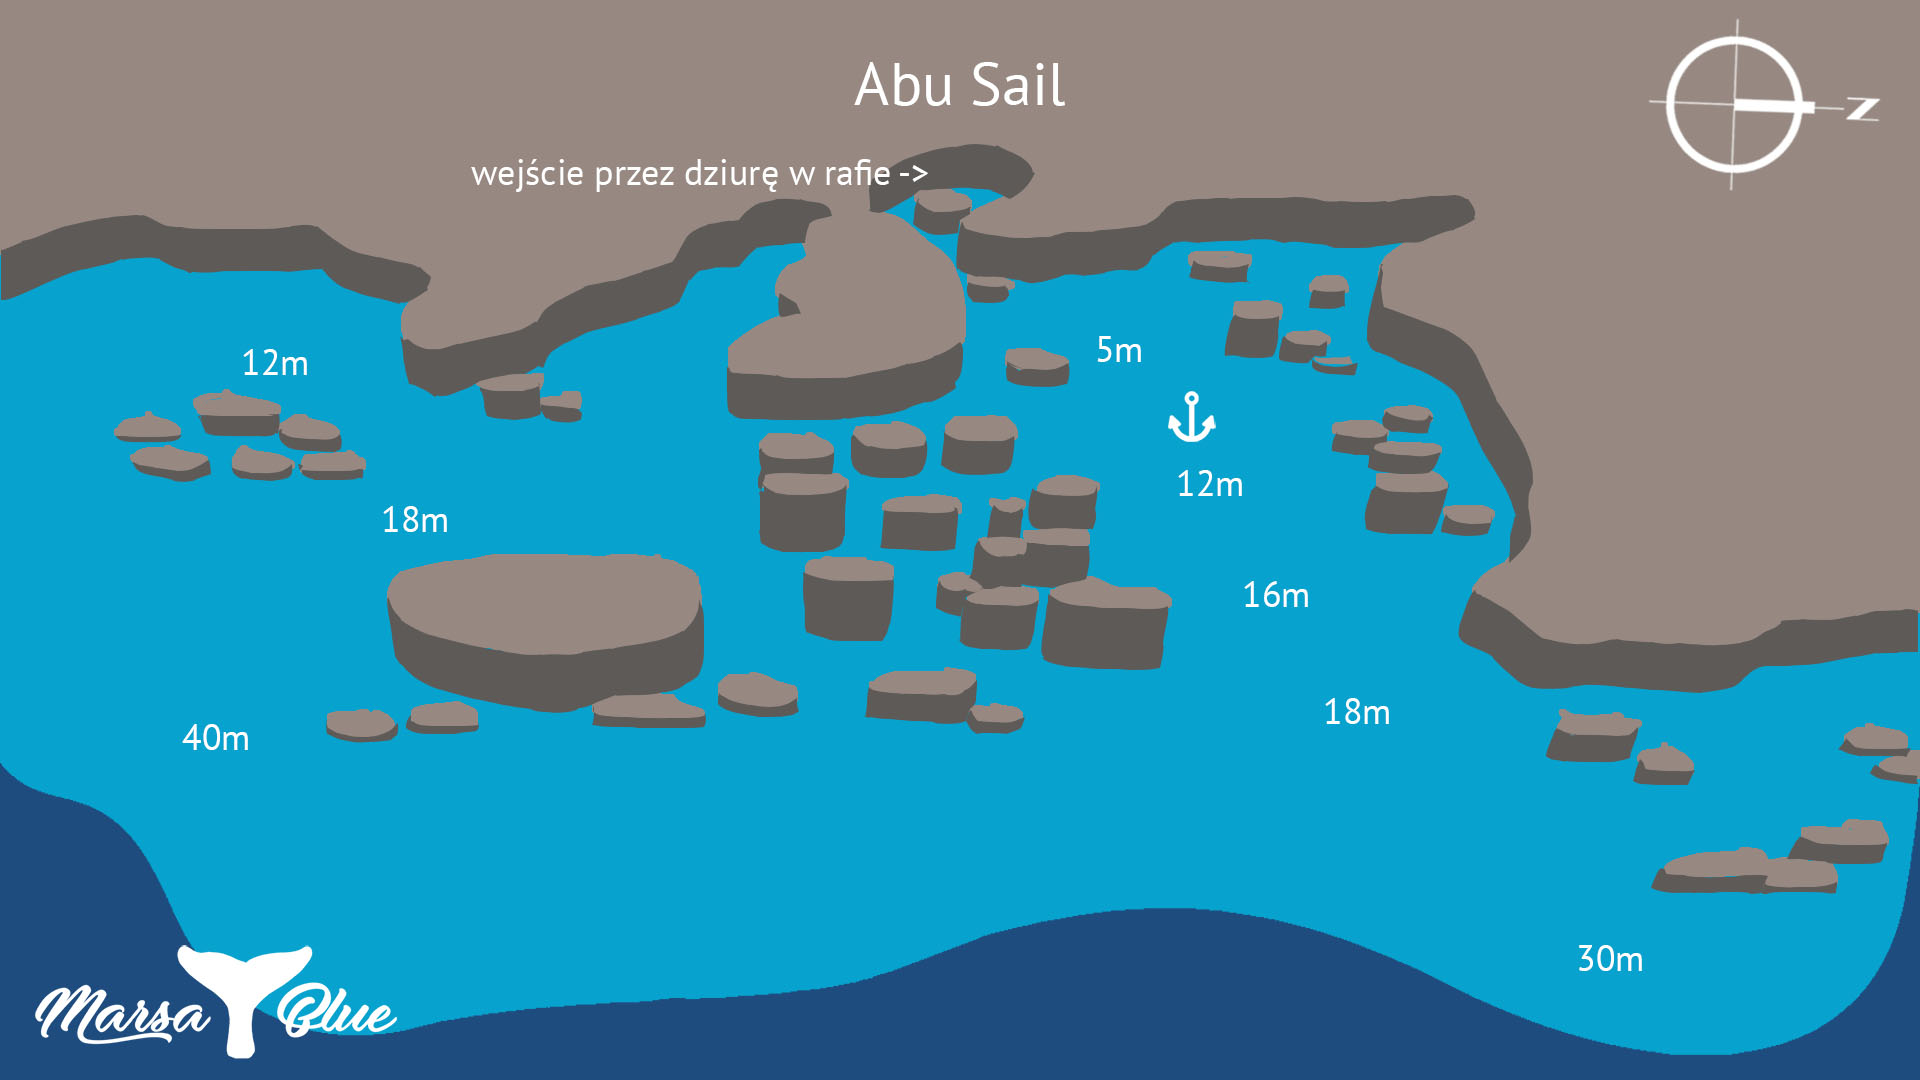 Abu Sail - Mapa spotu nurkowego